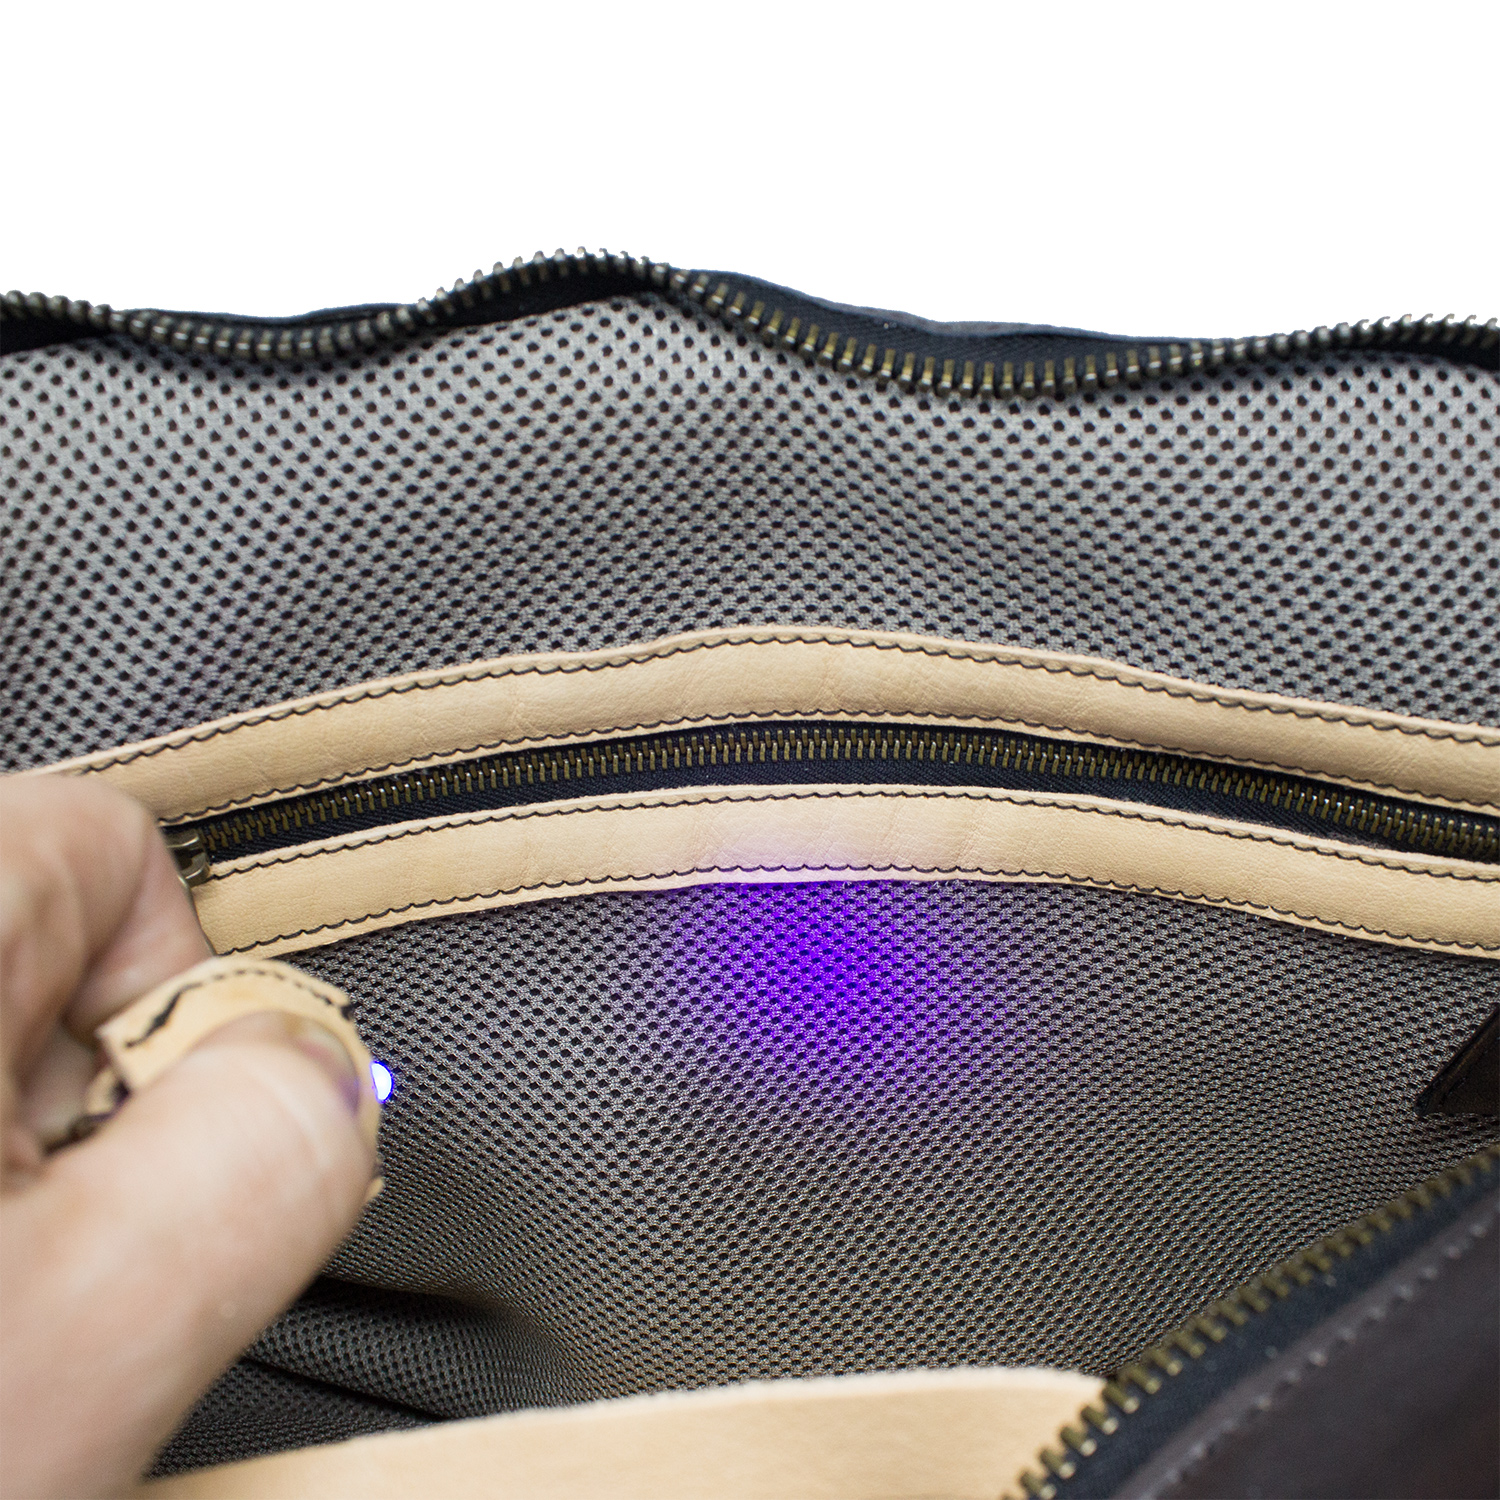 Borsa a tracolla in pelle da uomo per laptop con luce LED posta all'interno della borsa che facilita la visualizzazione del contenuto.